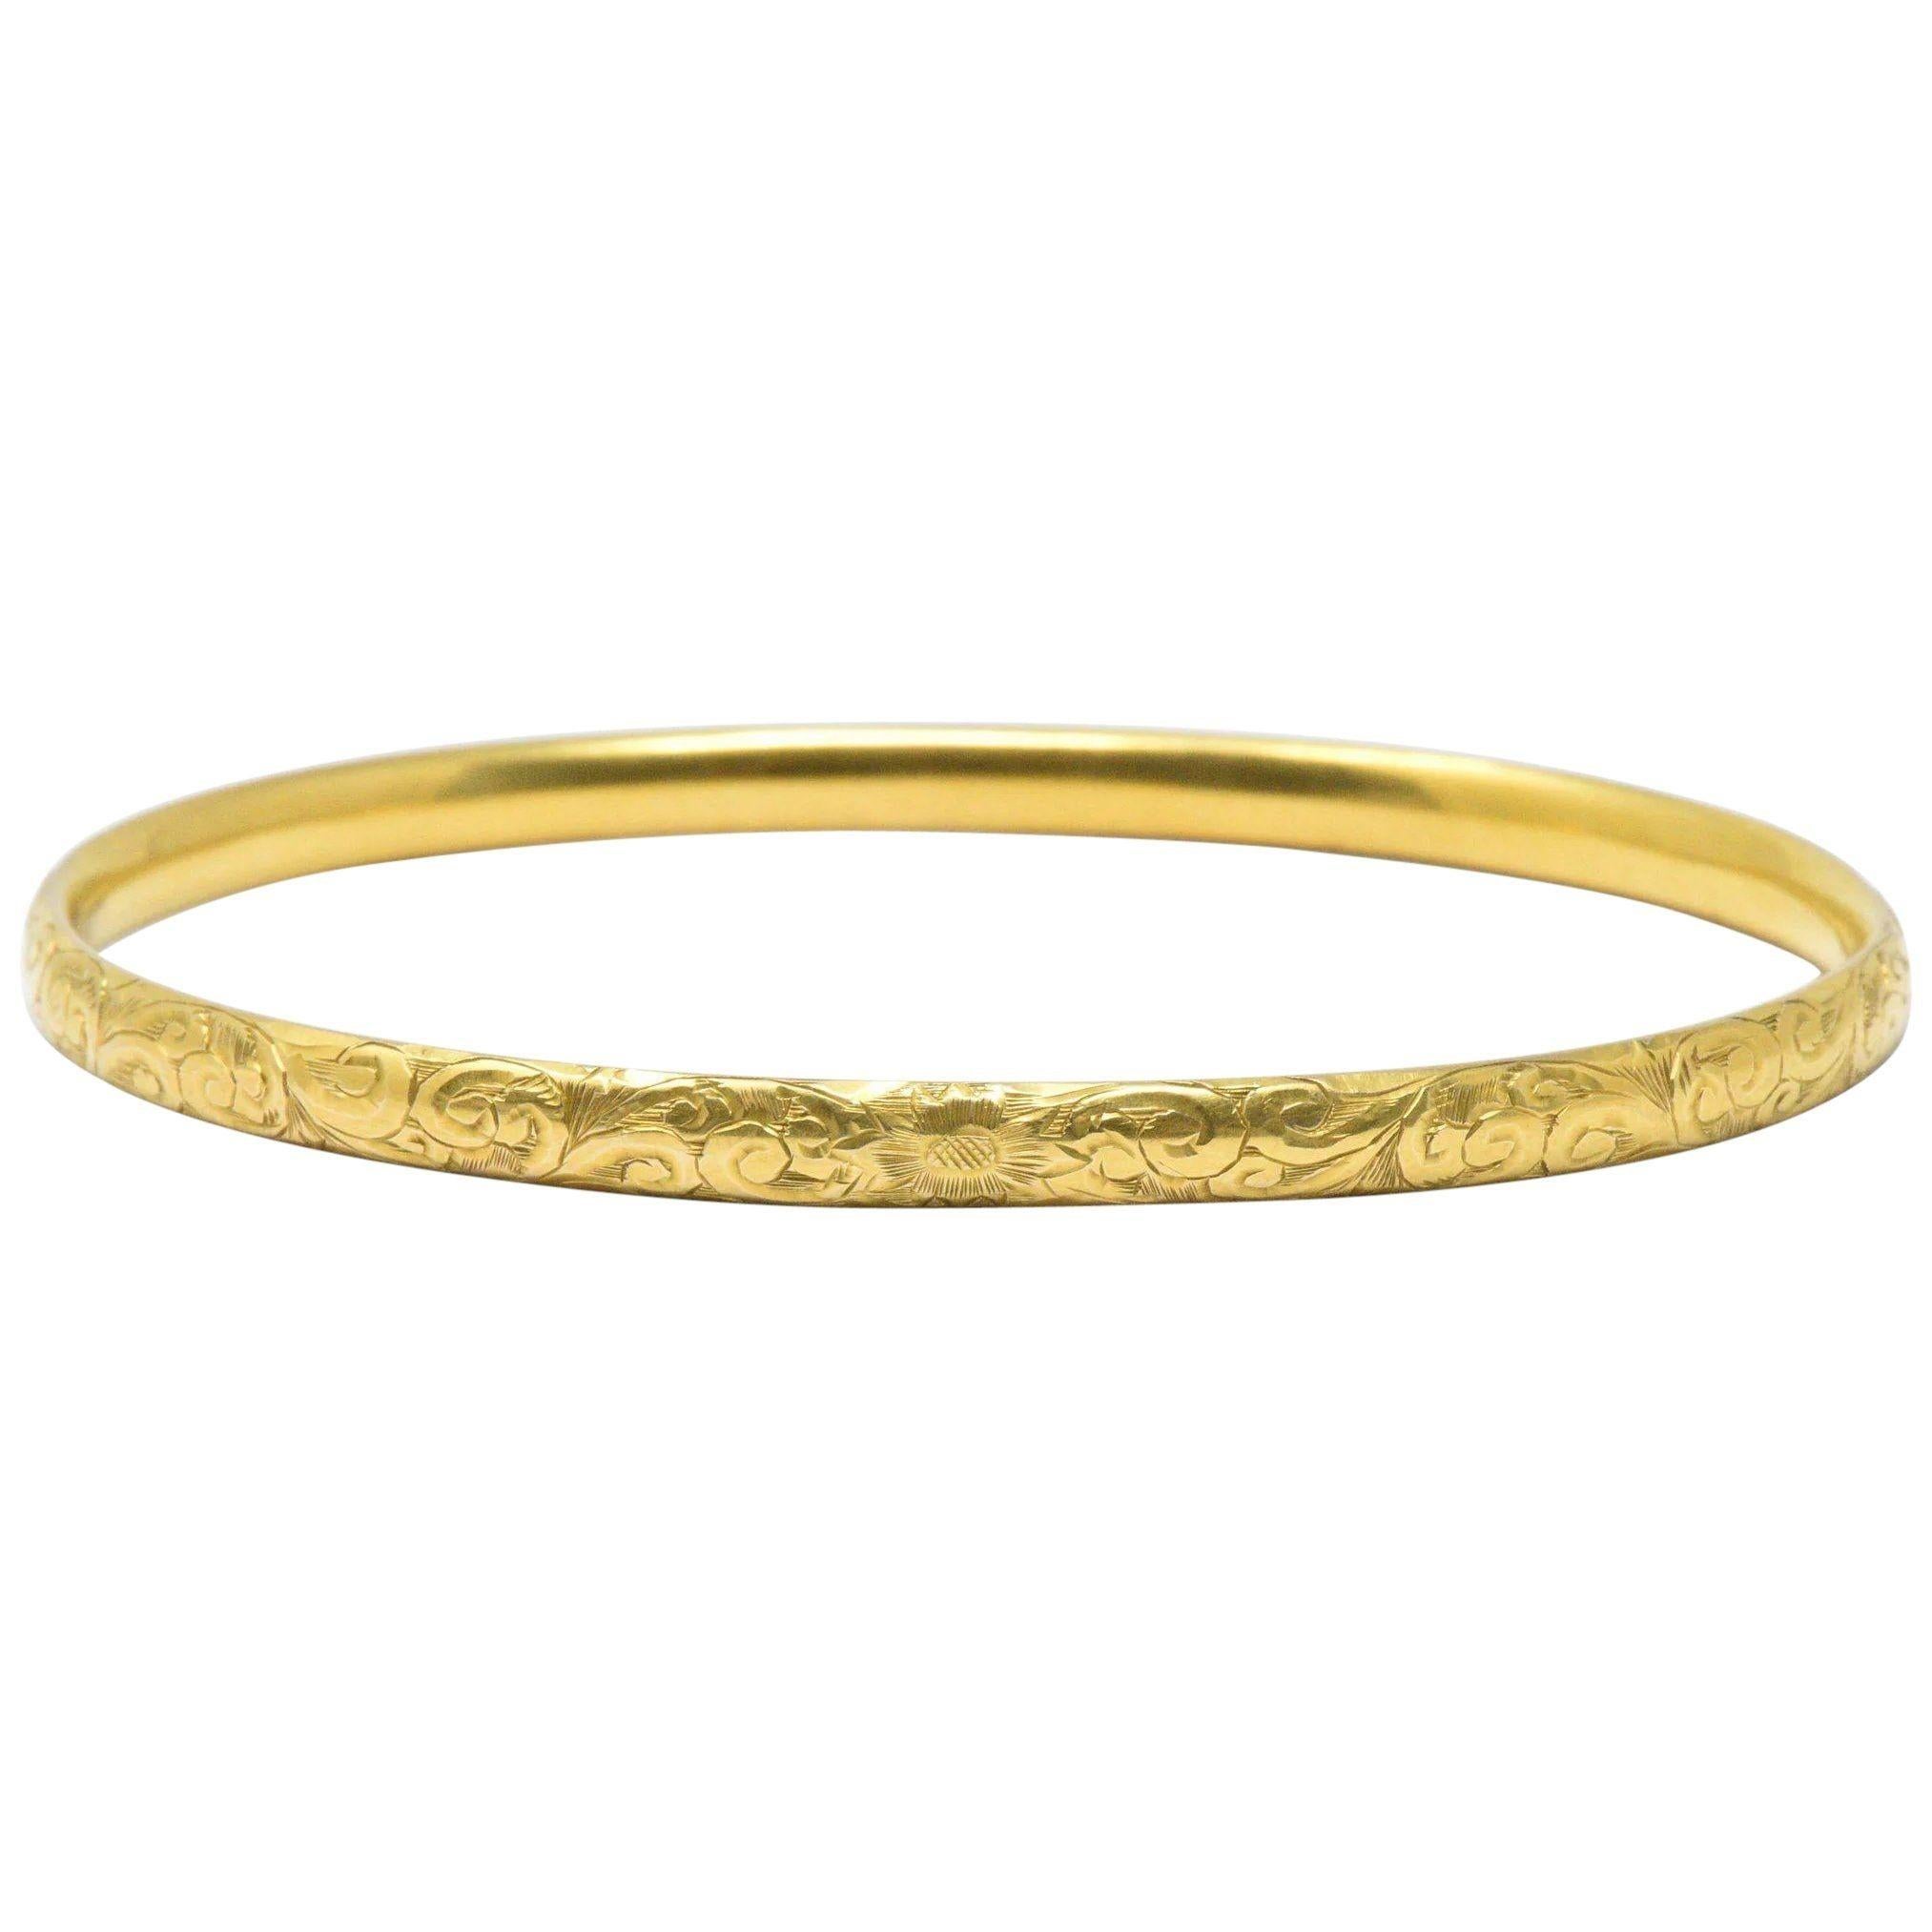 Simmons Art Nouveau 14 Karat Gold Bangle Bracelet